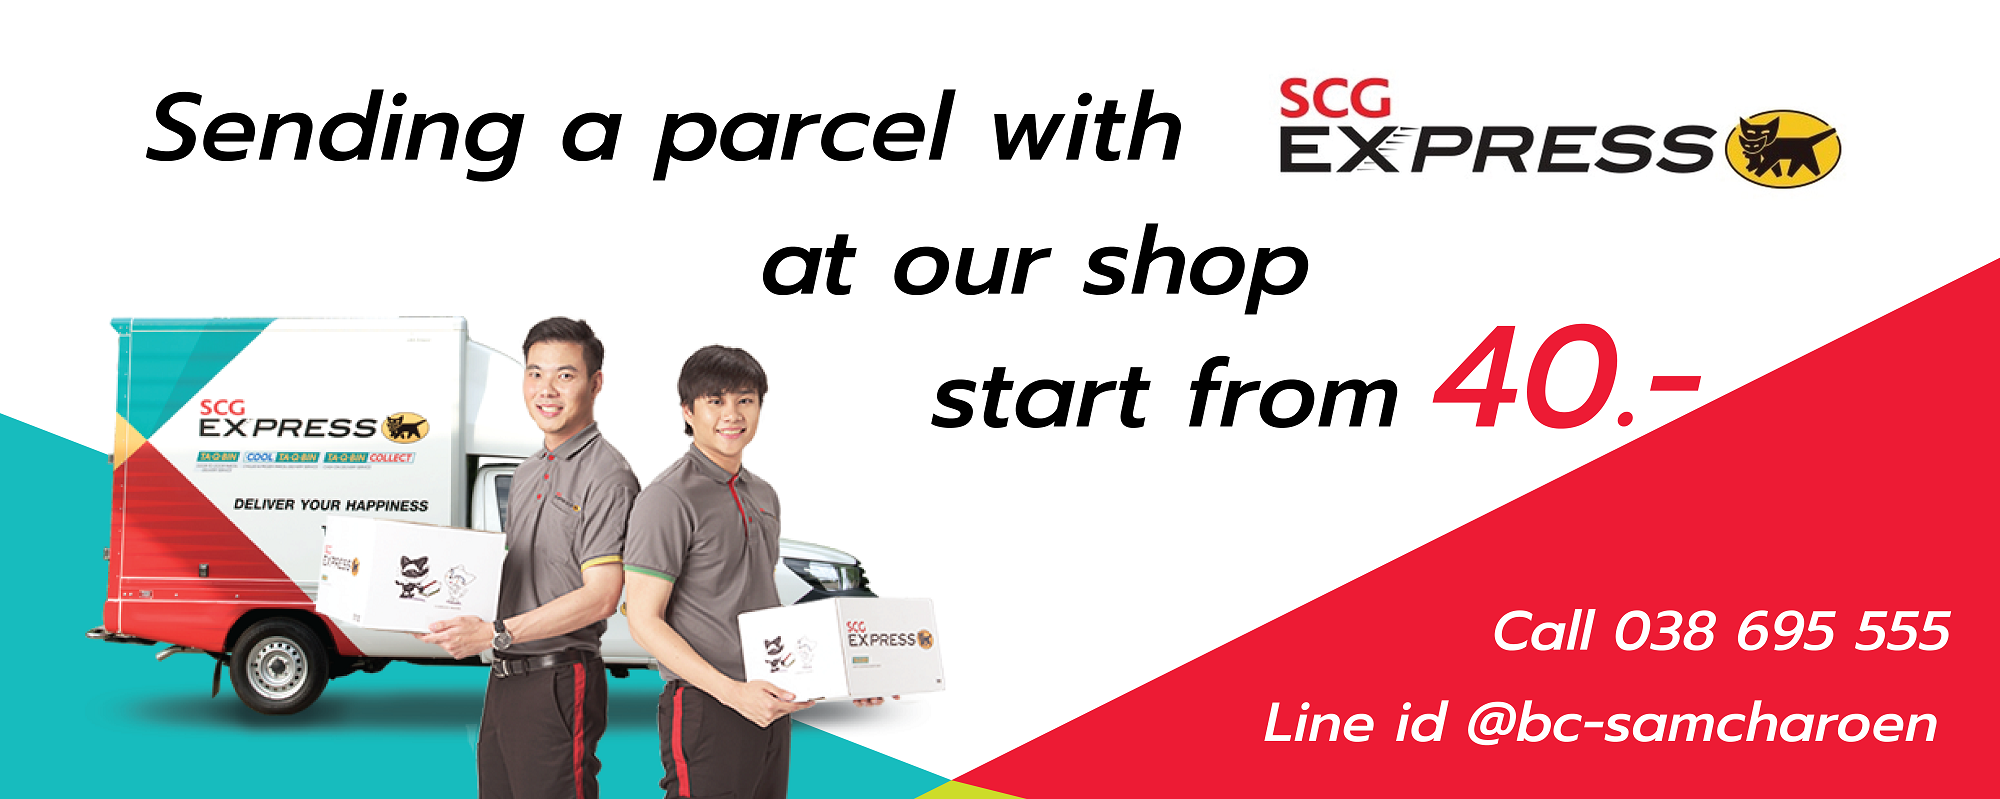 Sending parcel start from 40 Baht